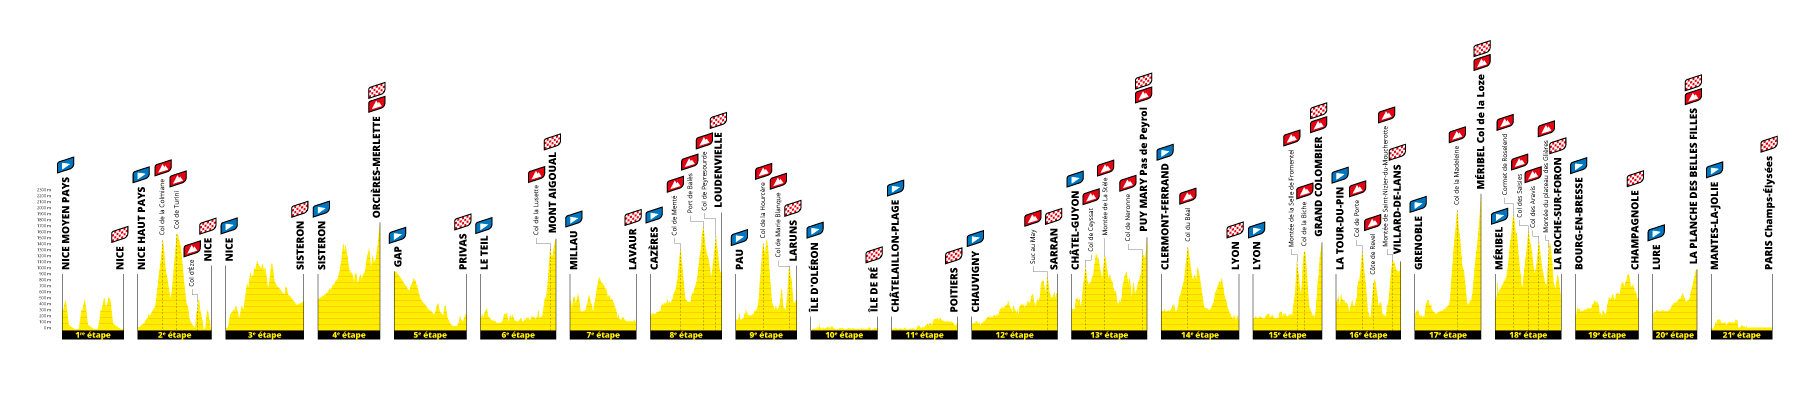 Frise profils de toutes les étapes du Tour de France 2020